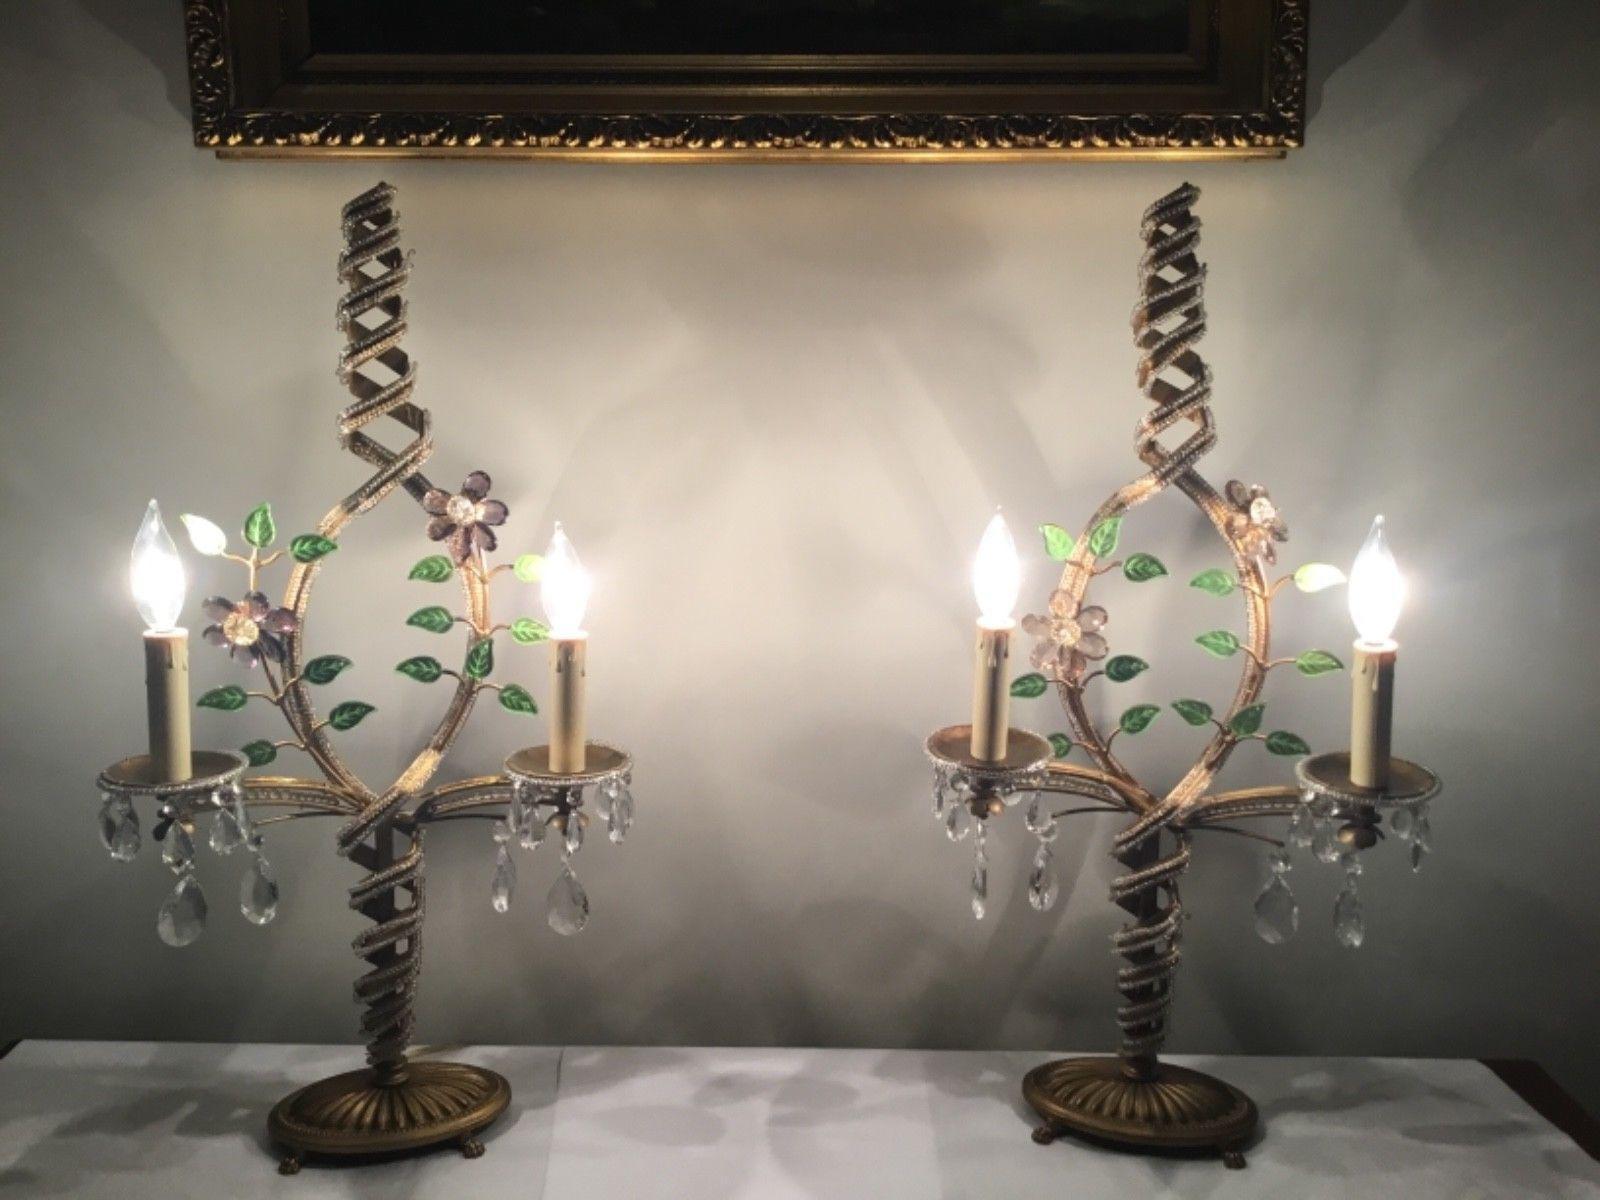 Lampes de table de forme Gloral de l'époque Hollywood Regency française des années 1940. Cadre en métal argenté avec fleurs en cristal. Détails en micro-cristaux. Les lampes ont un design en forme de tourbillon.